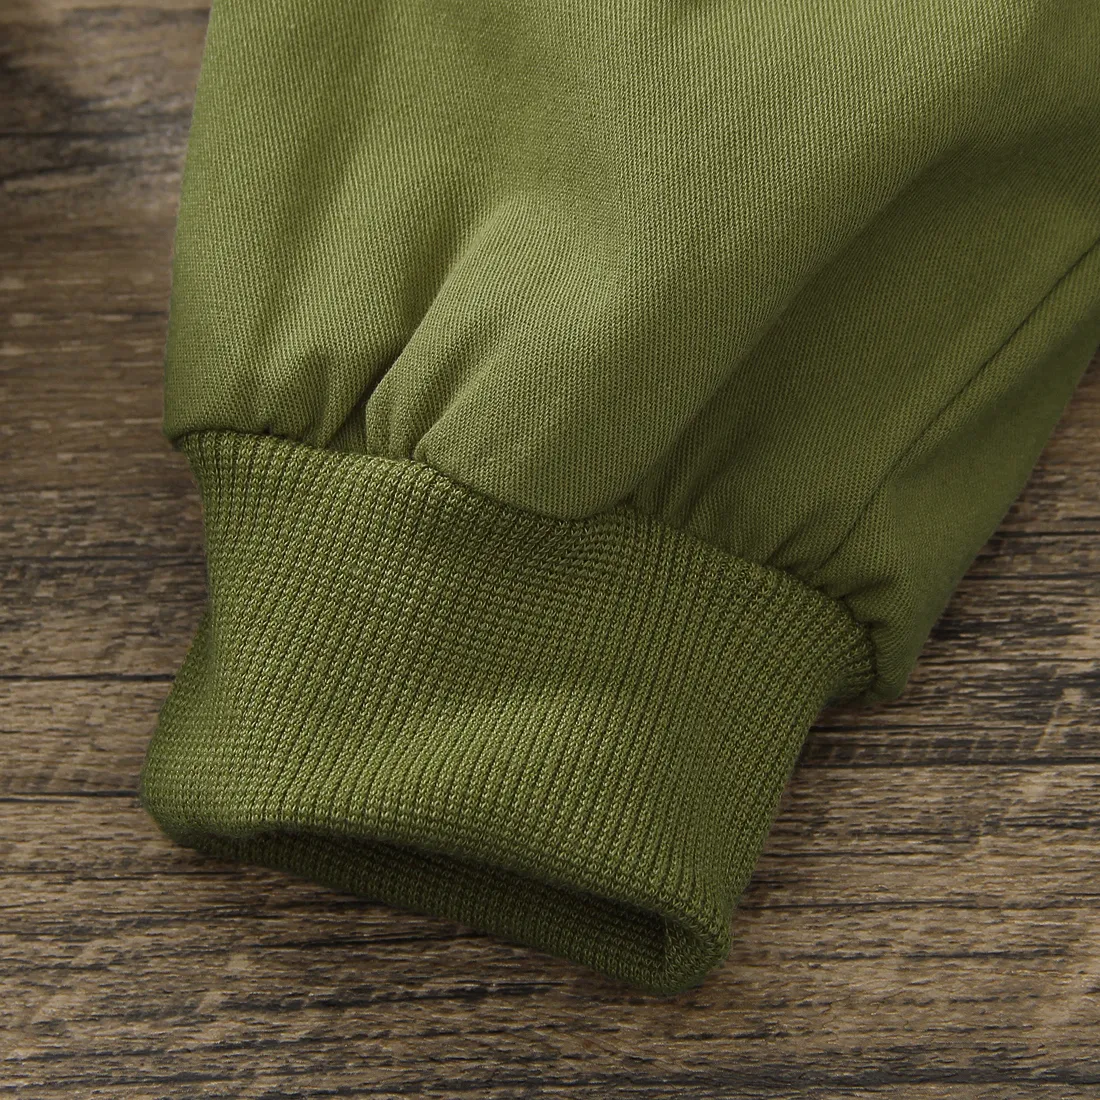 Khaki-Hose mit modischem Taschendesign für Kleinkinder Armeegrün big image 1